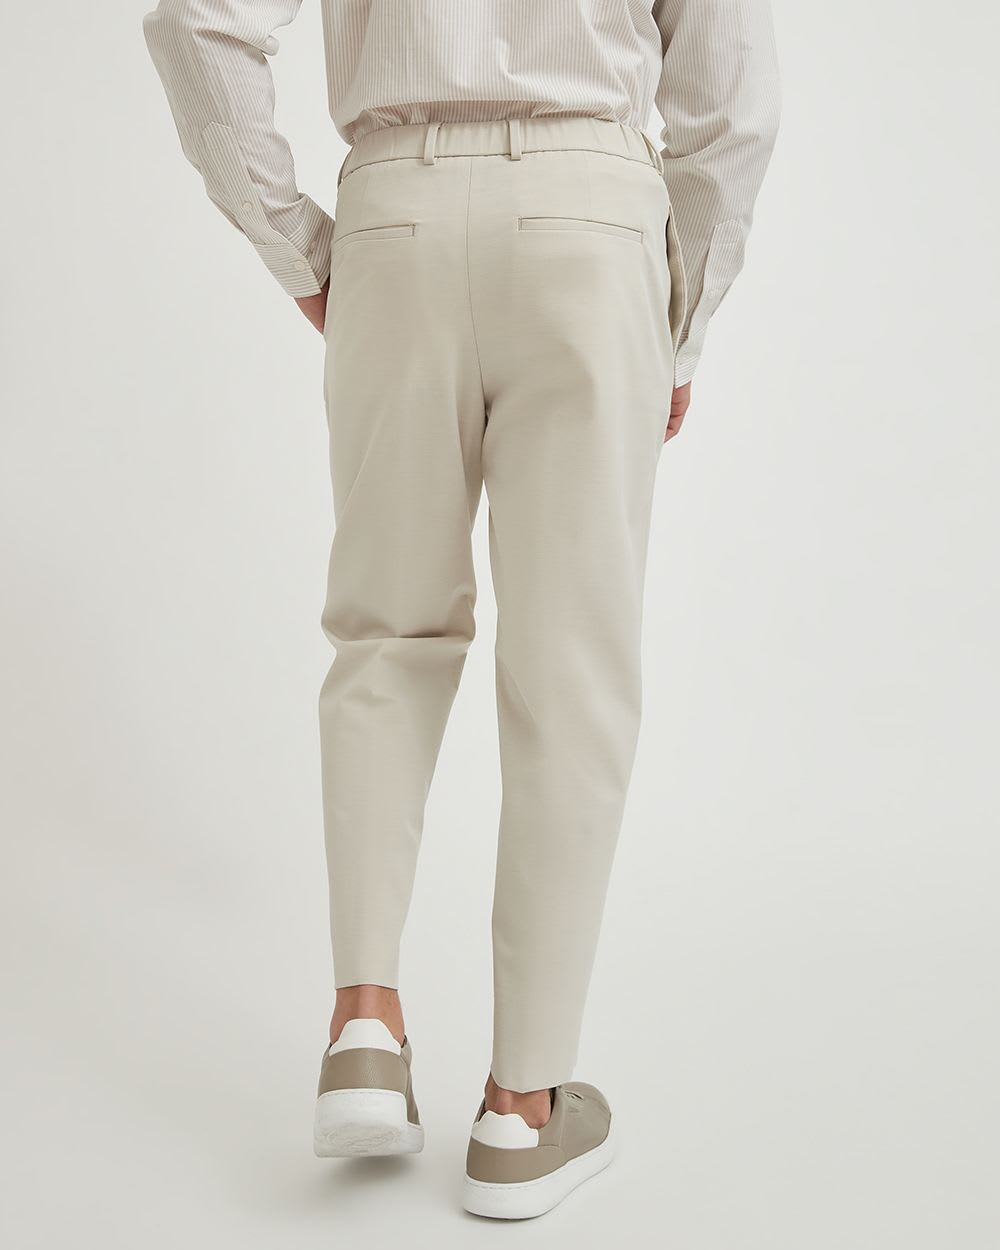 Pantalon de Complet Non-Genré à Jambe Large - 28 "